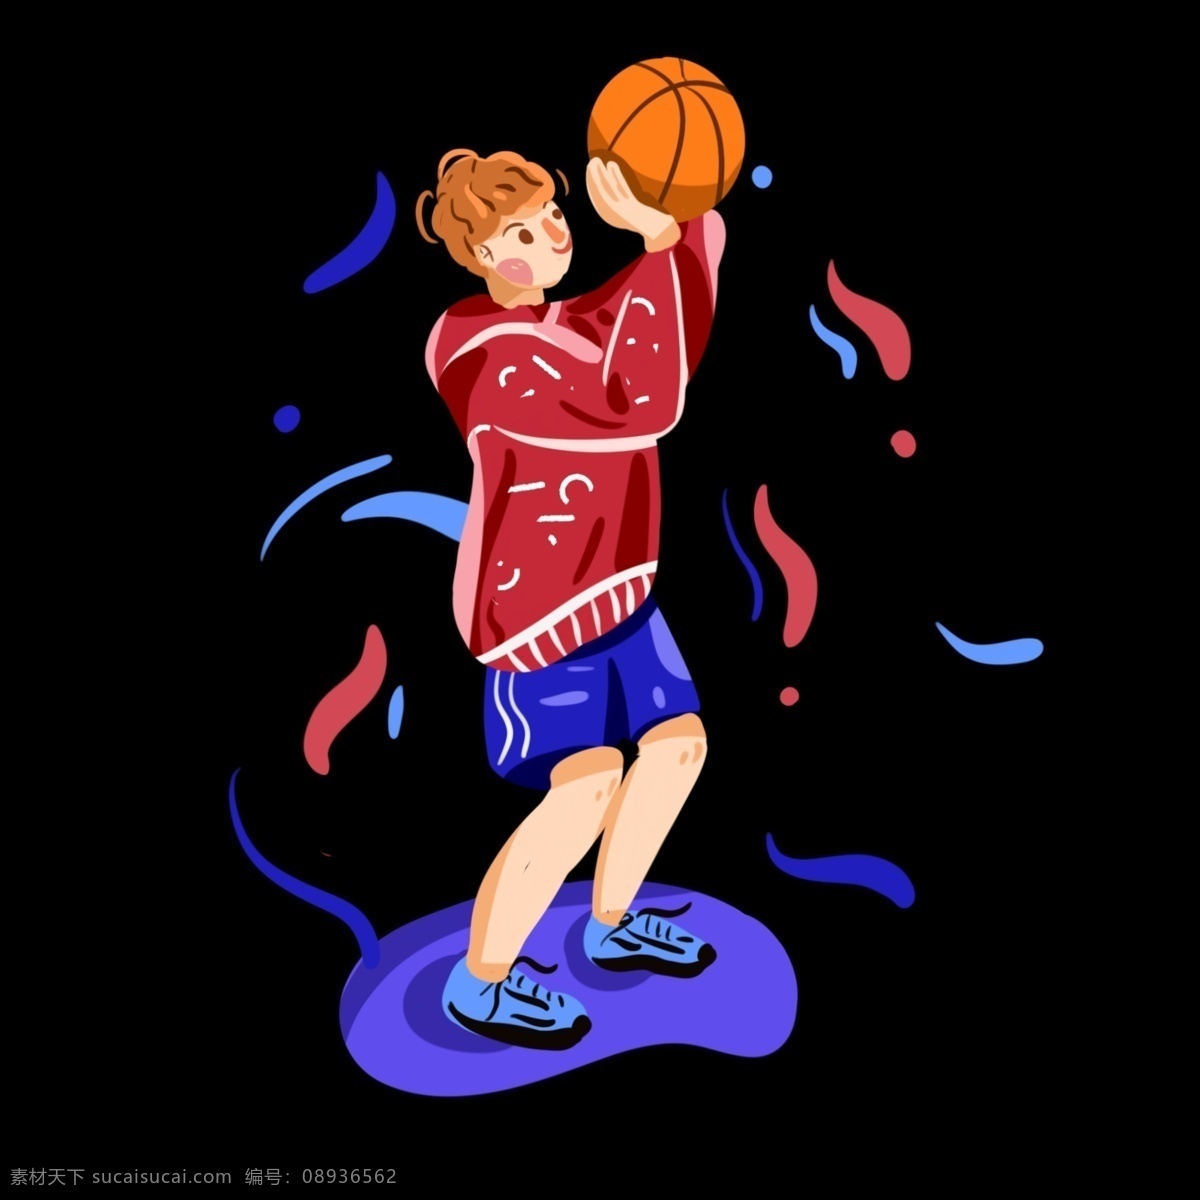 投篮 男孩 手绘 插 画风 免 抠 投篮男孩 投篮动作 运动男孩 运动会 篮球 比赛 运动员 卫衣男孩 bannner